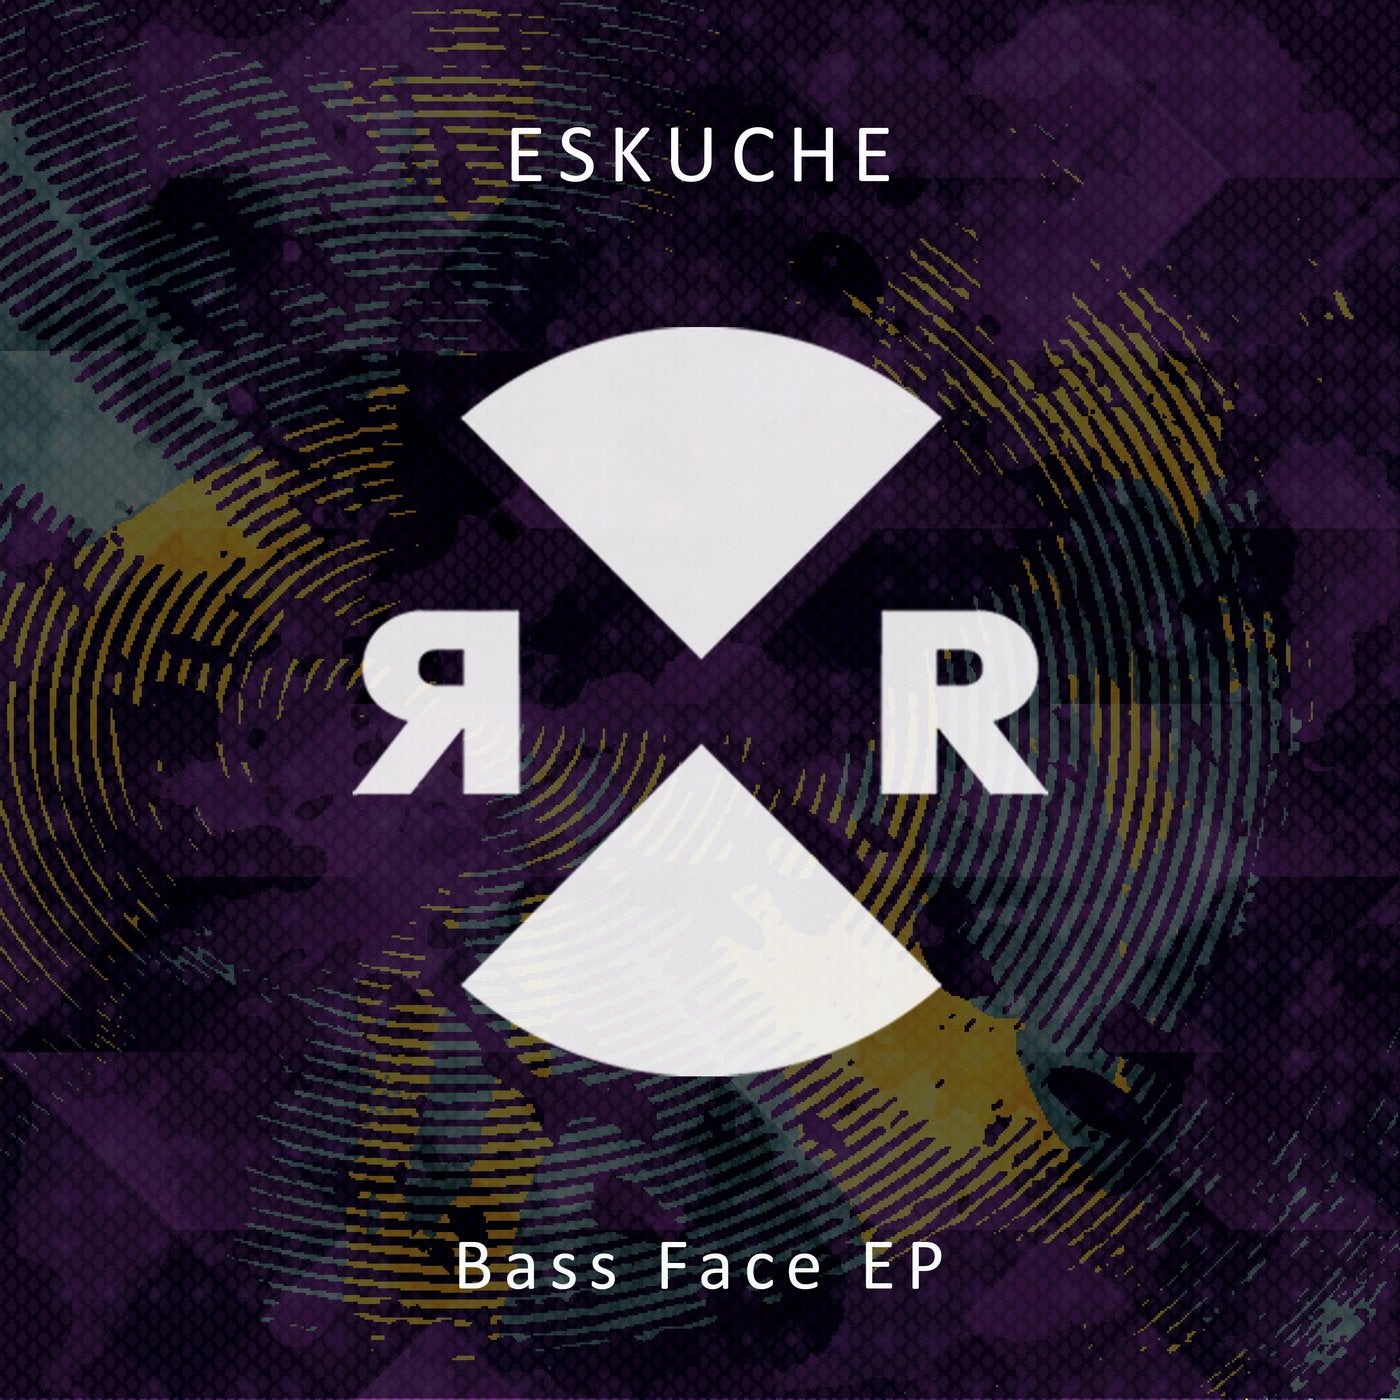 Bass Face EP